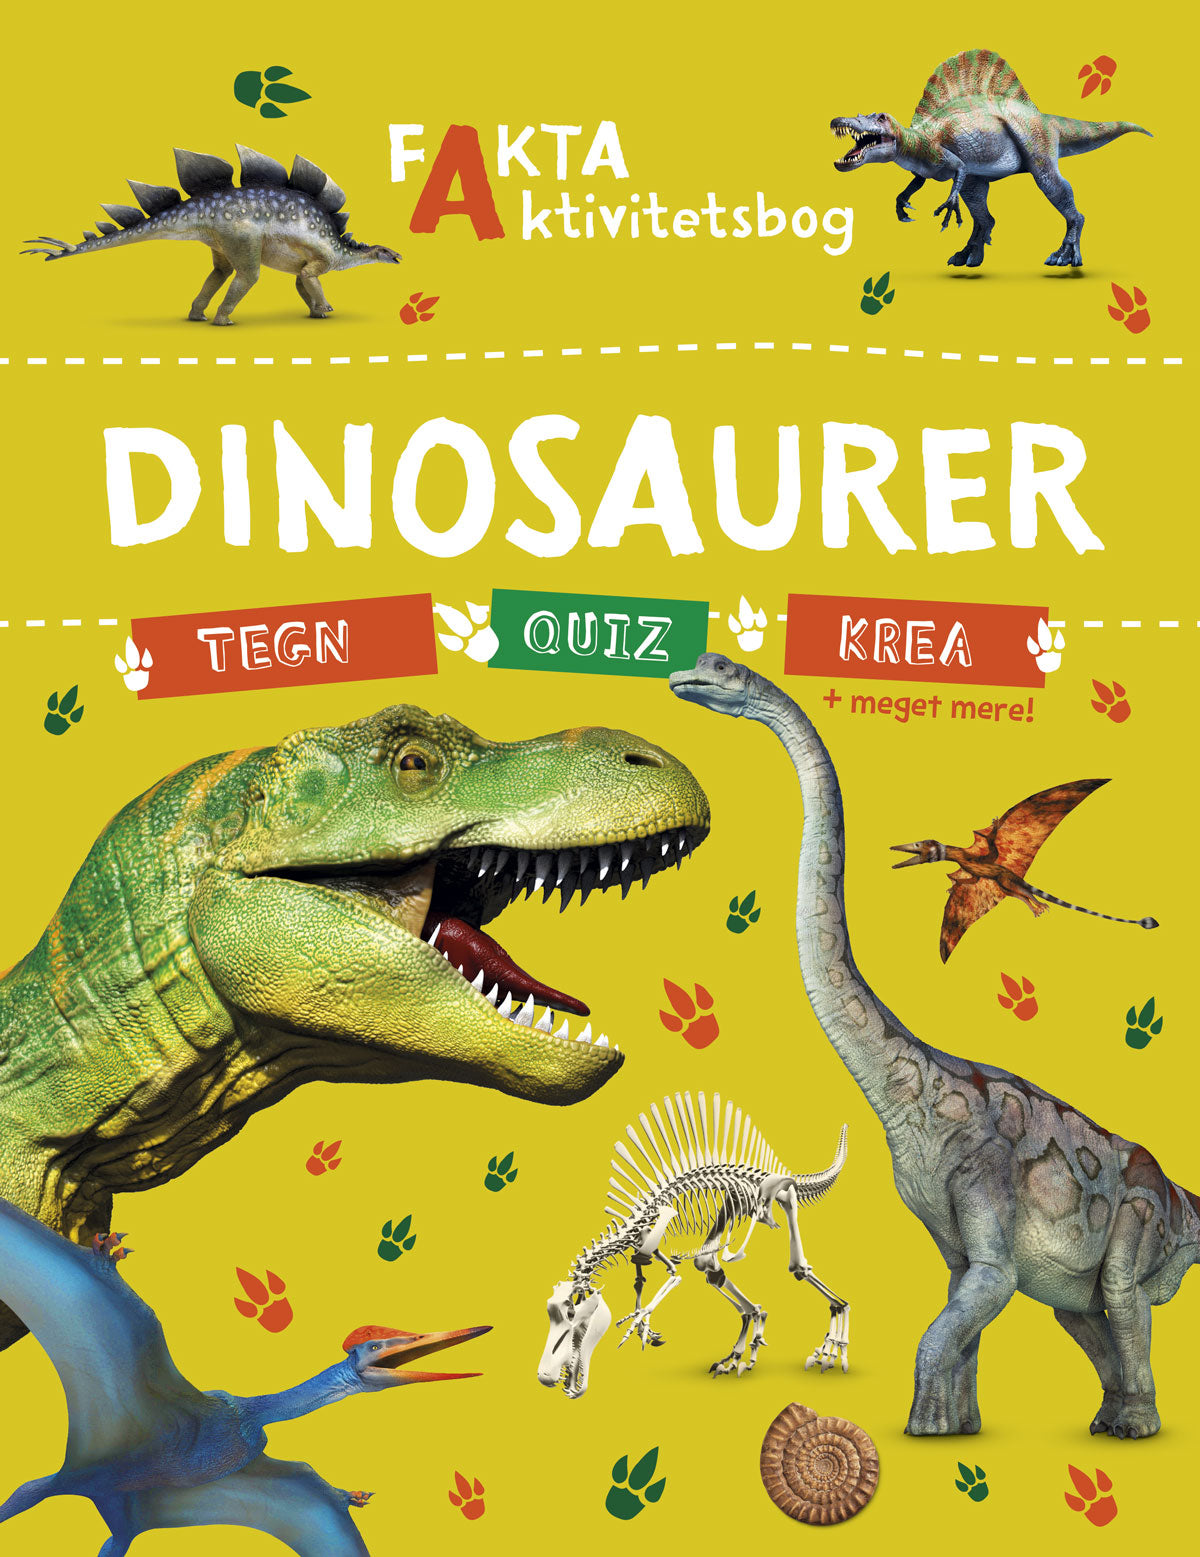 Fakta-aktivitetsbog: Dinosaurer - Bøger - Legekammeraten.dk